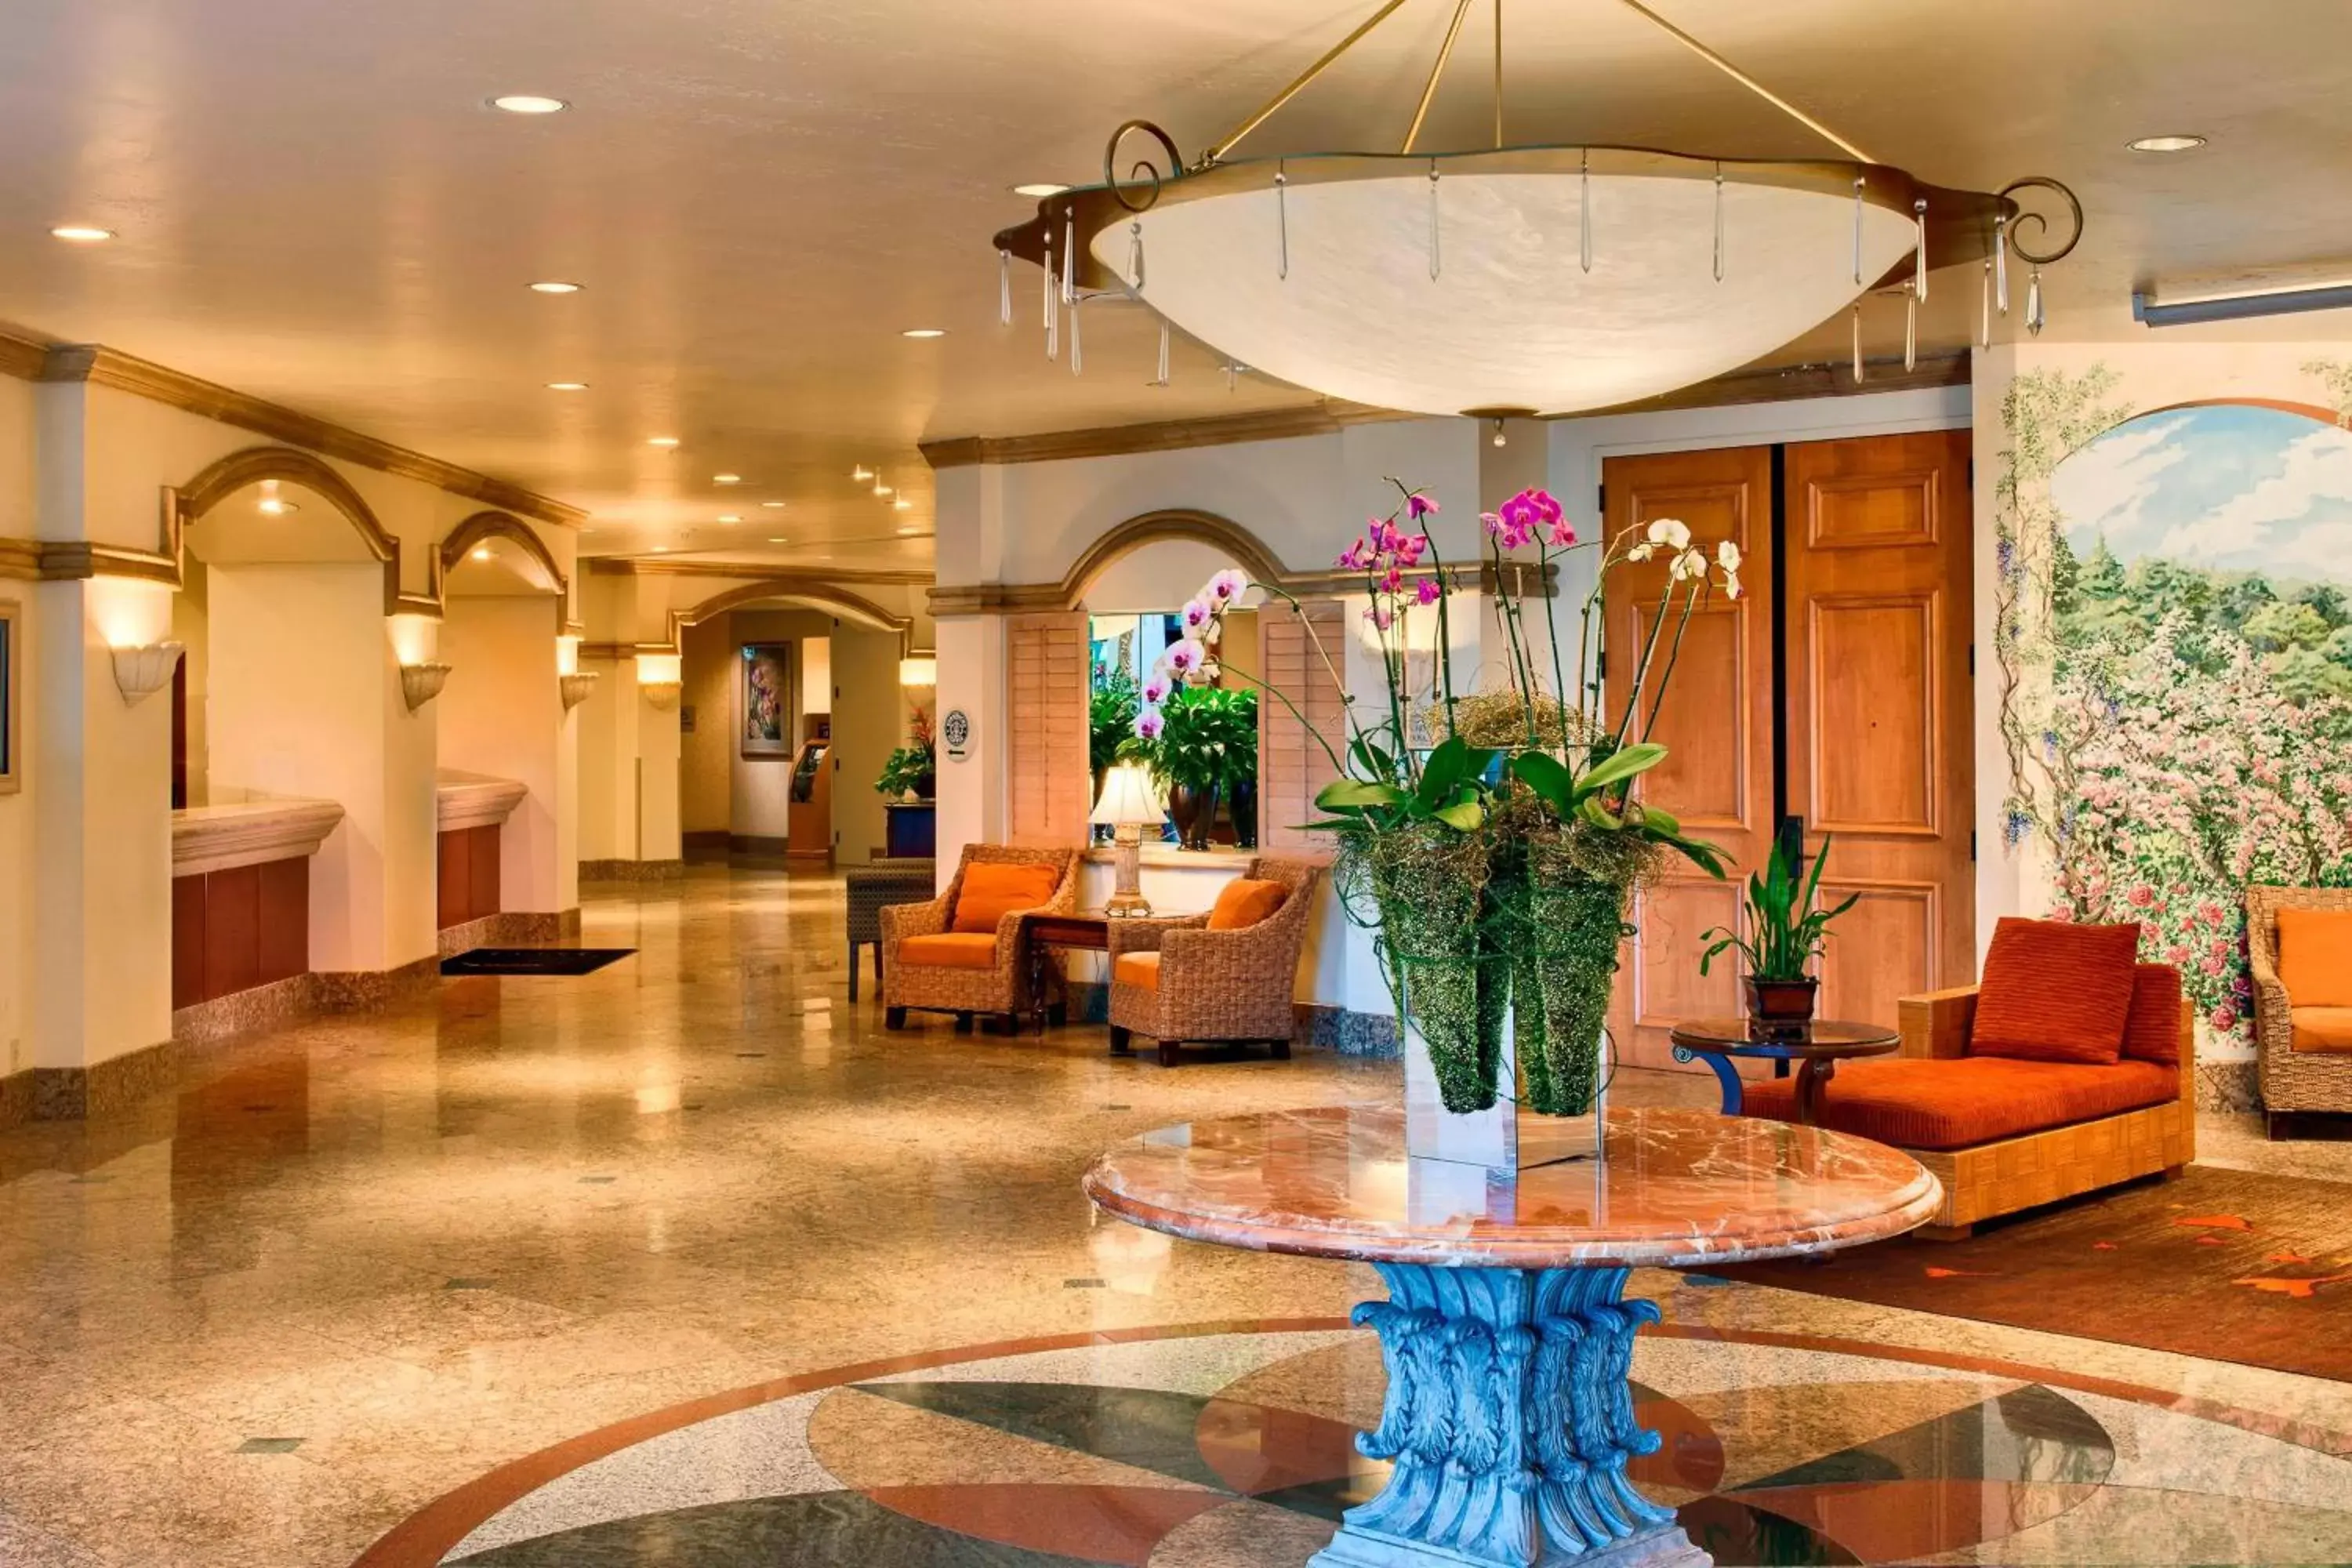 Lobby or reception, Lobby/Reception in Sacramento Marriott Rancho Cordova